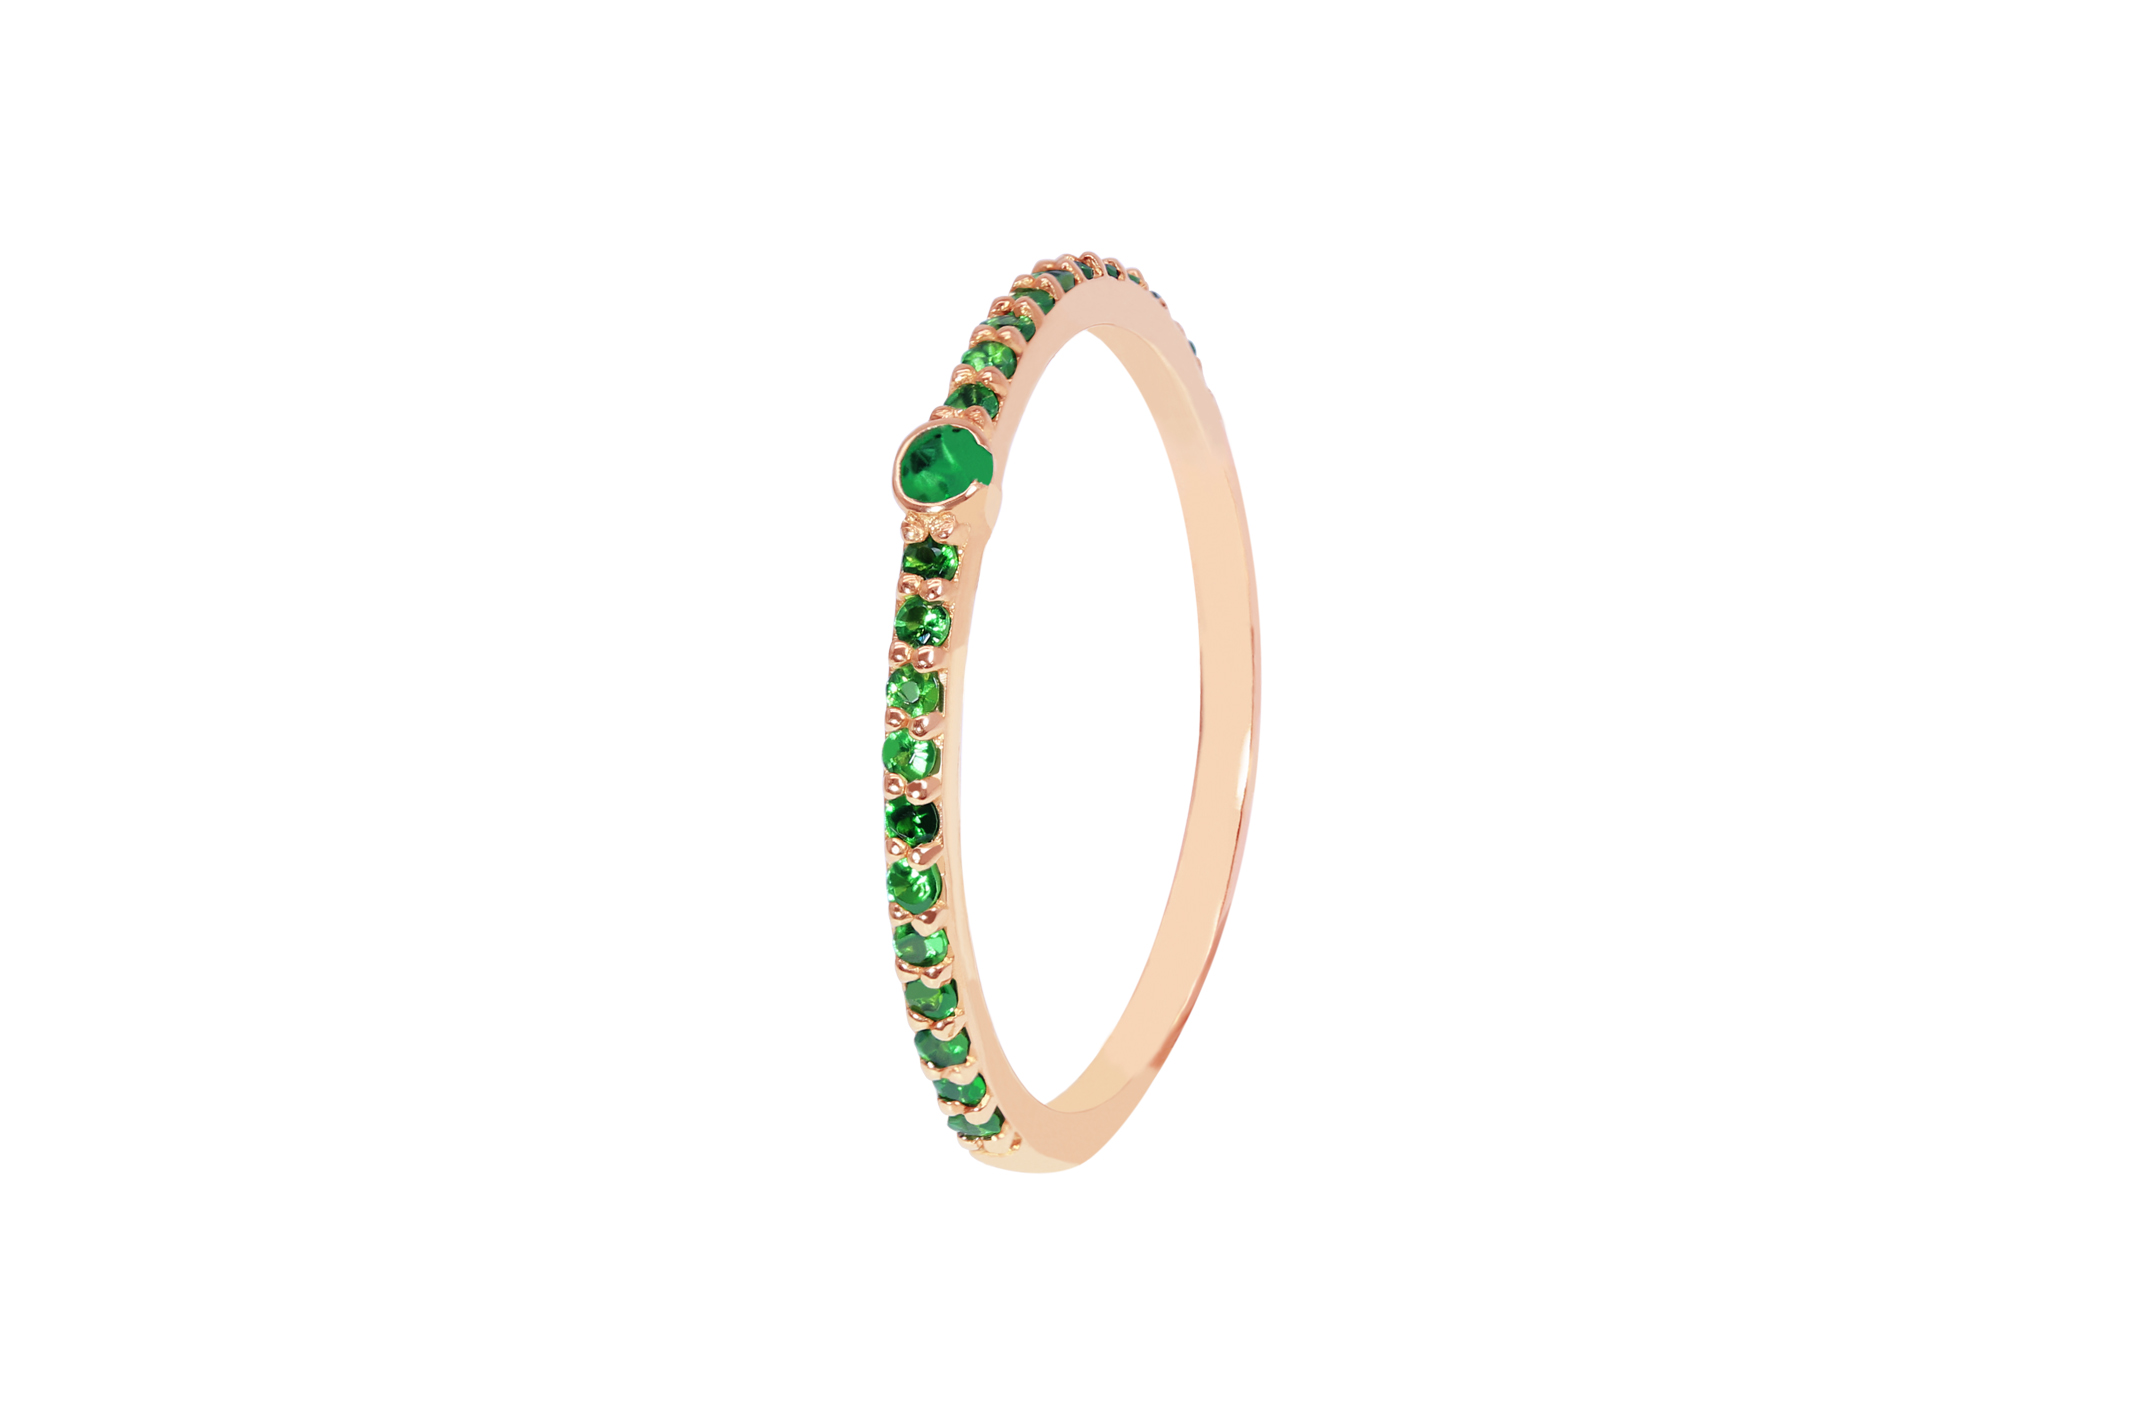 Joia: anel;Material: ouro 19.25kt;Peso: 1.80 gr;Pedras: 23 esmeraldas de 0.30ct;Cor: cor-de-rosa;Género: mulher